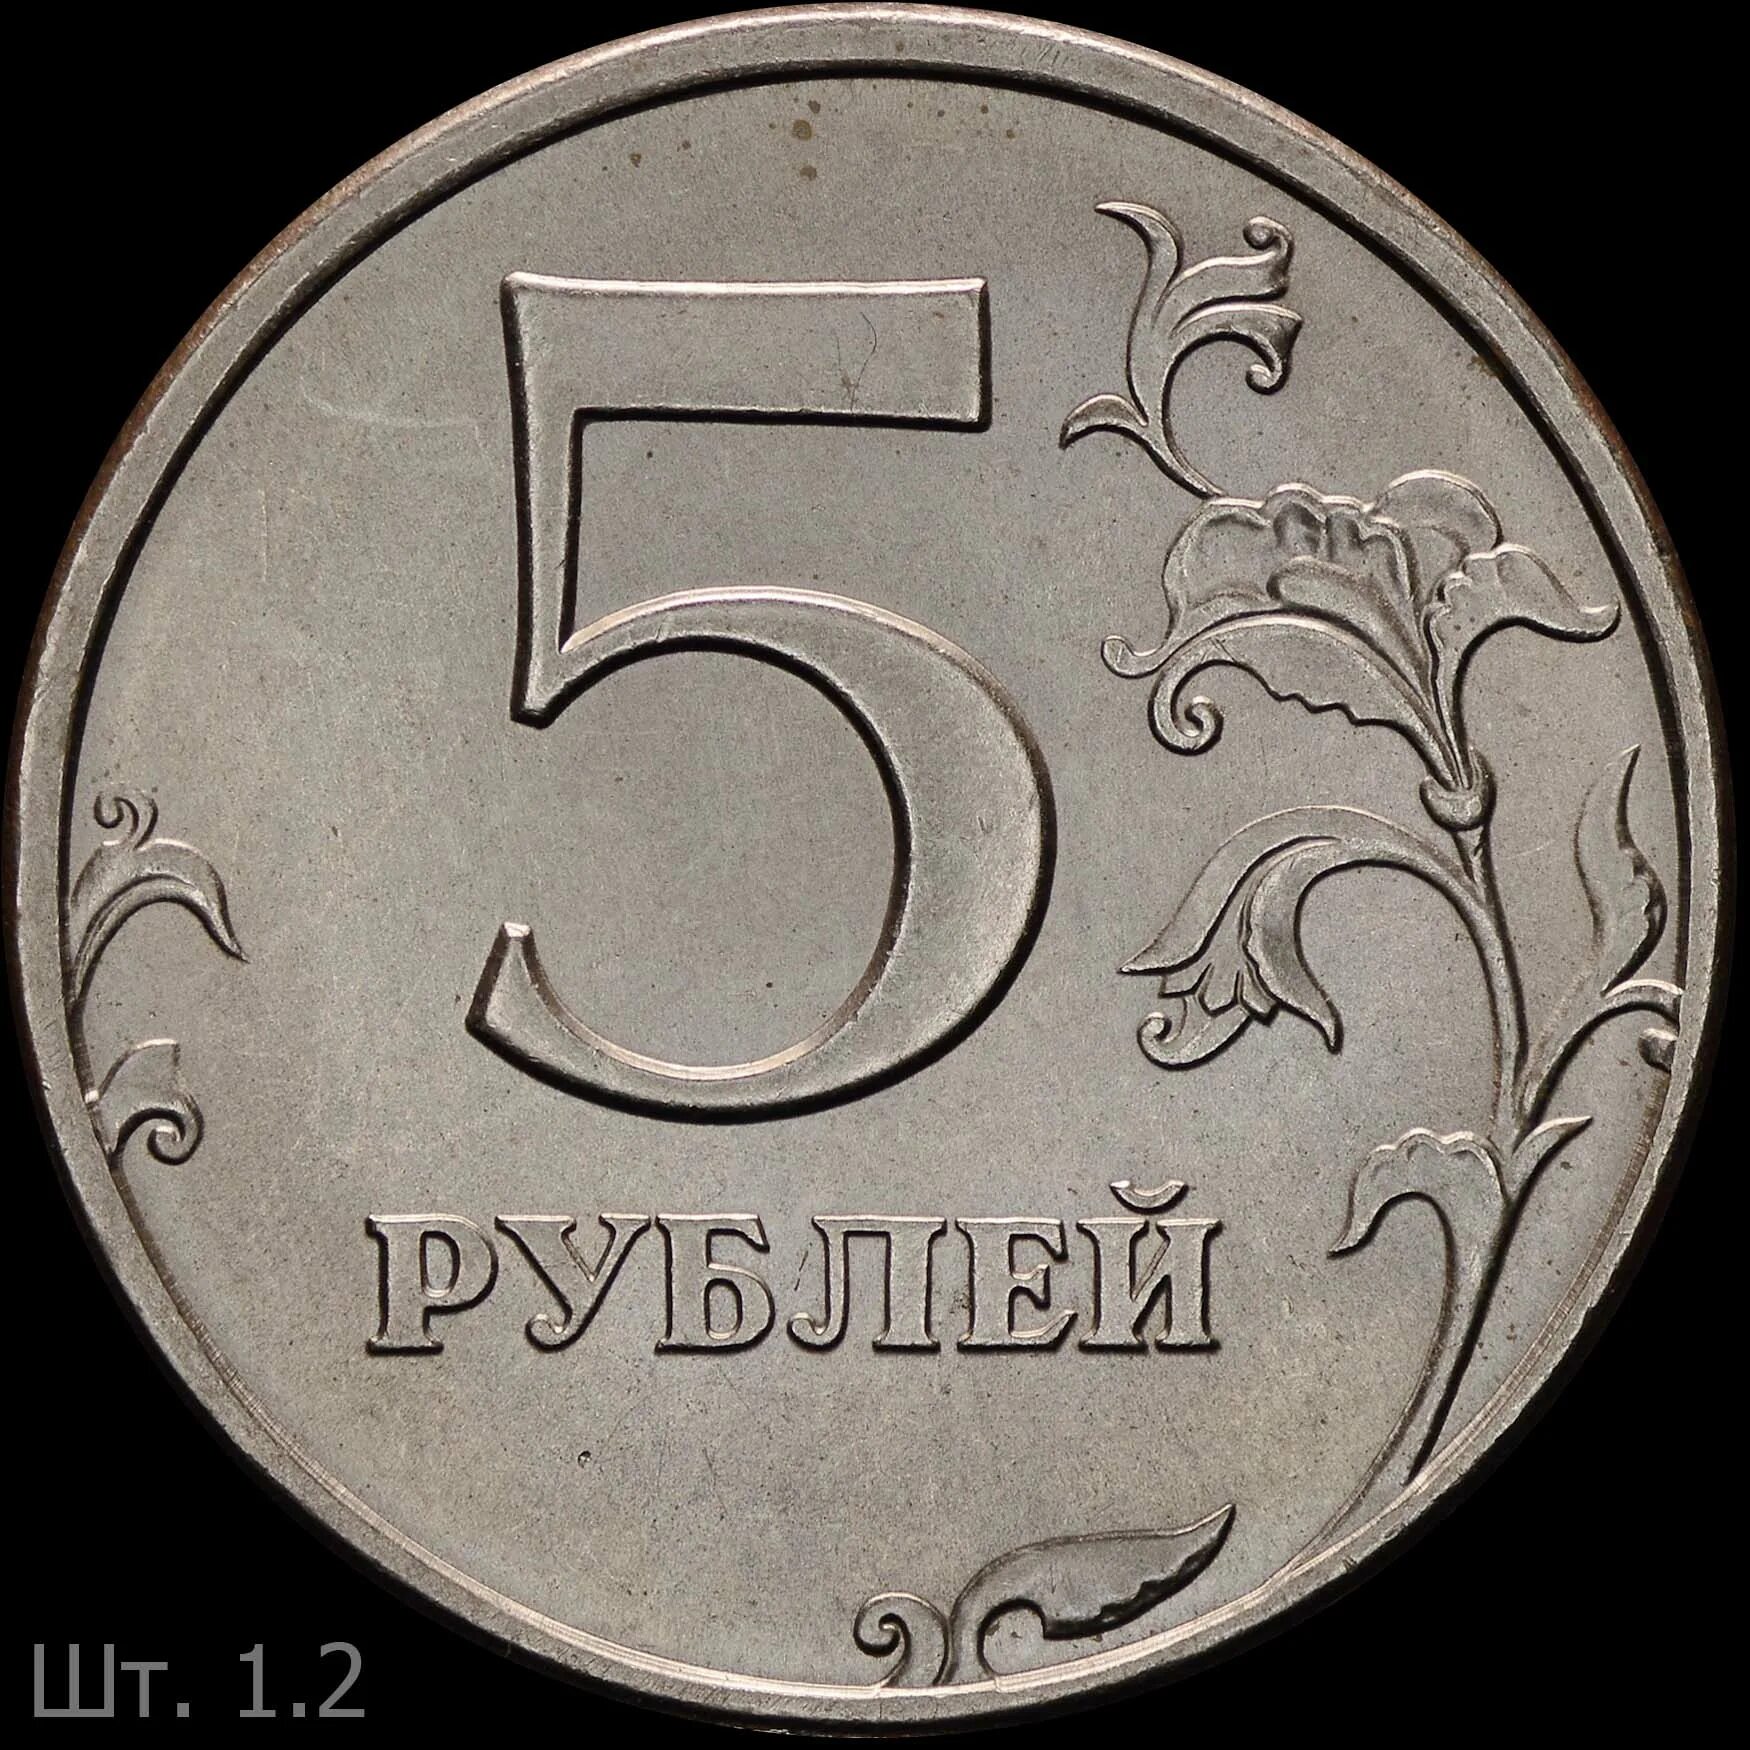 5 руб новые. 5 Рублей 1997 года СПМД штемпель 2.3. Пять рублей Санкт-Петербургский монетный двор 1997. 5 Рублей 1997 года. Пять рублей 1997 года.